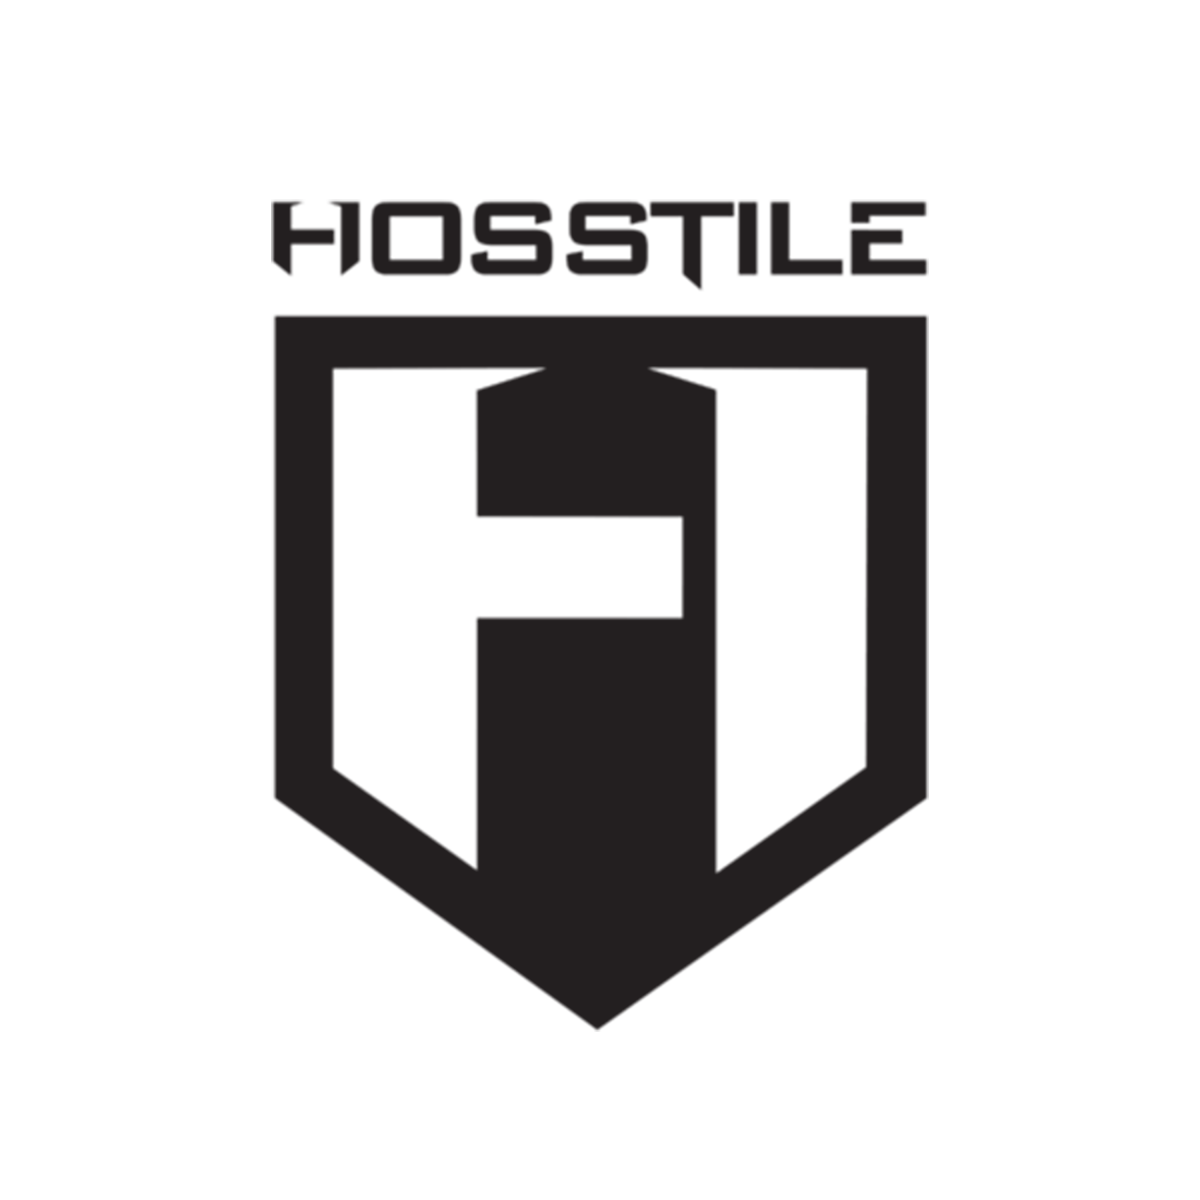 Hosstile - MJ Fitness